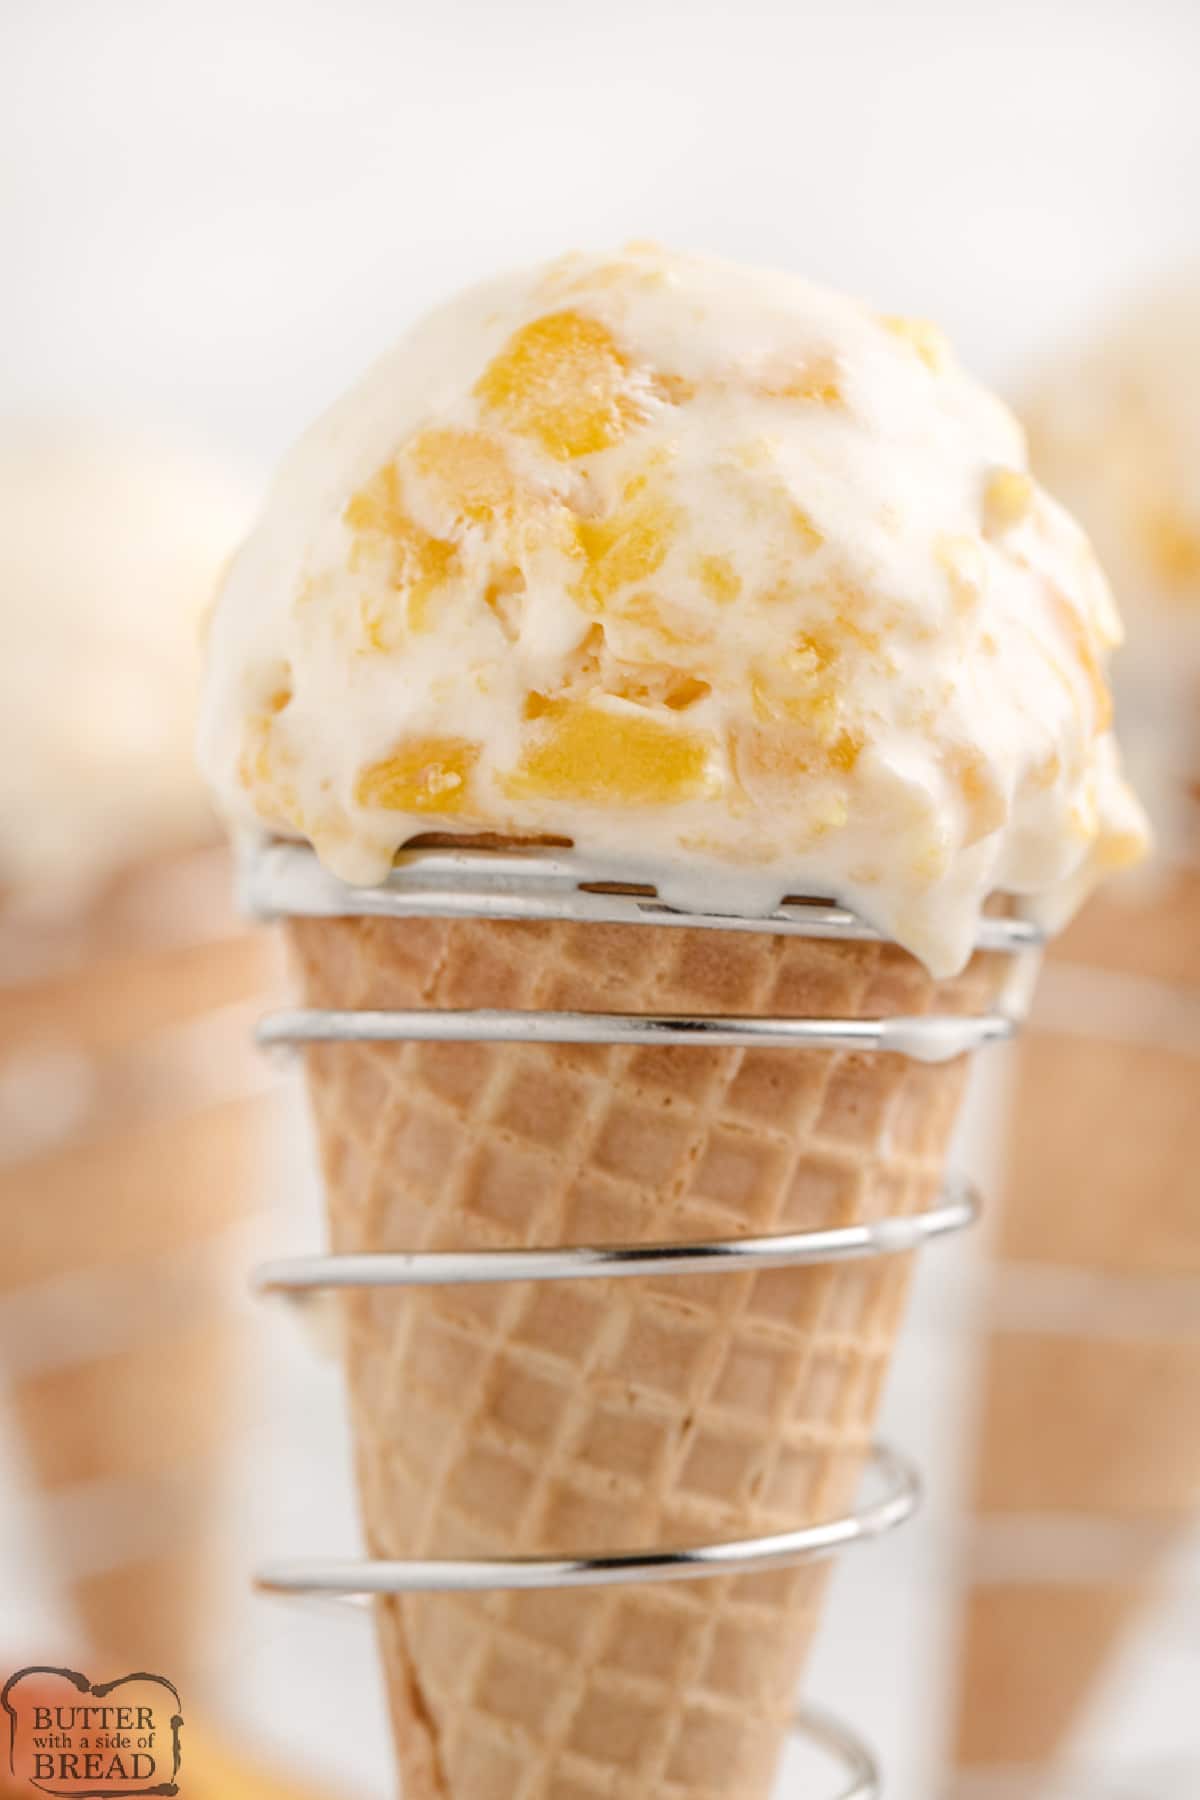 Homemade ice cream in a cone